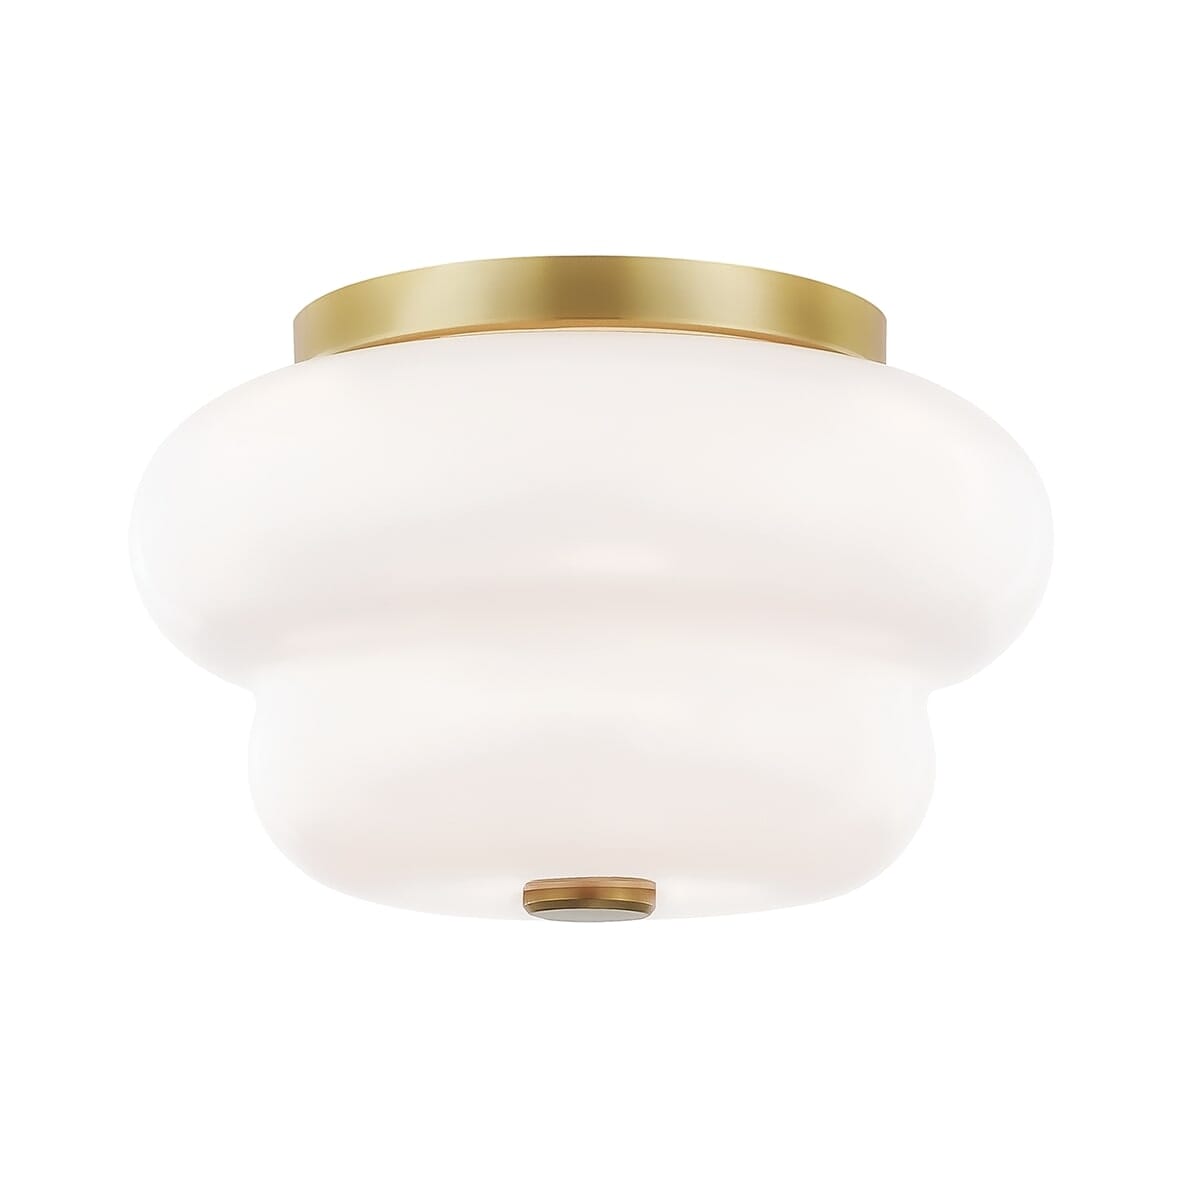 Mitzi Hazel 2-Light Ceiling Light in Aged Brass